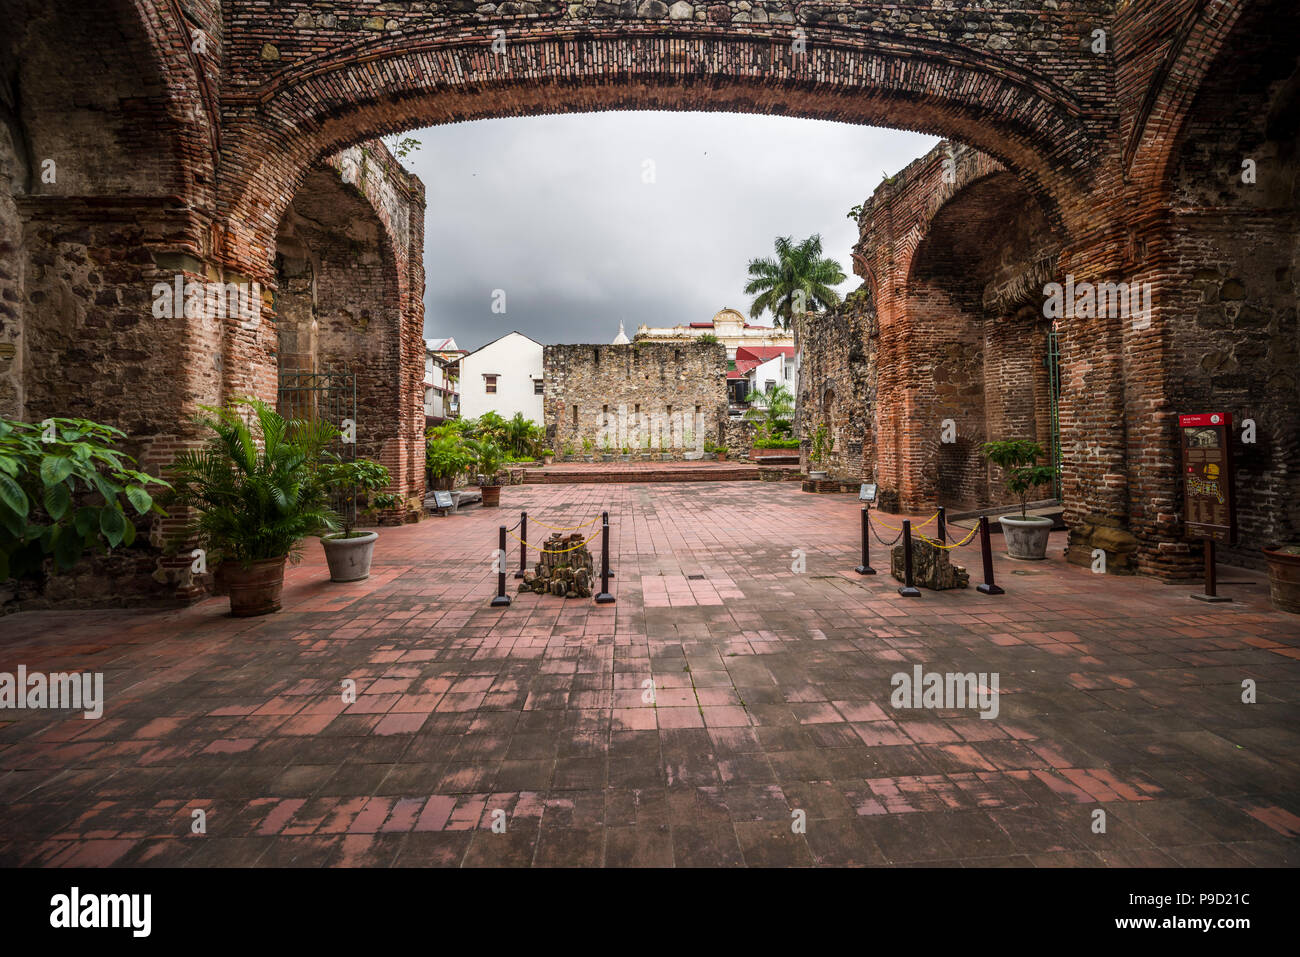 Vedute storiche dalla vecchia città chiamata cacsco viejo nella città di Panama Panama Foto Stock